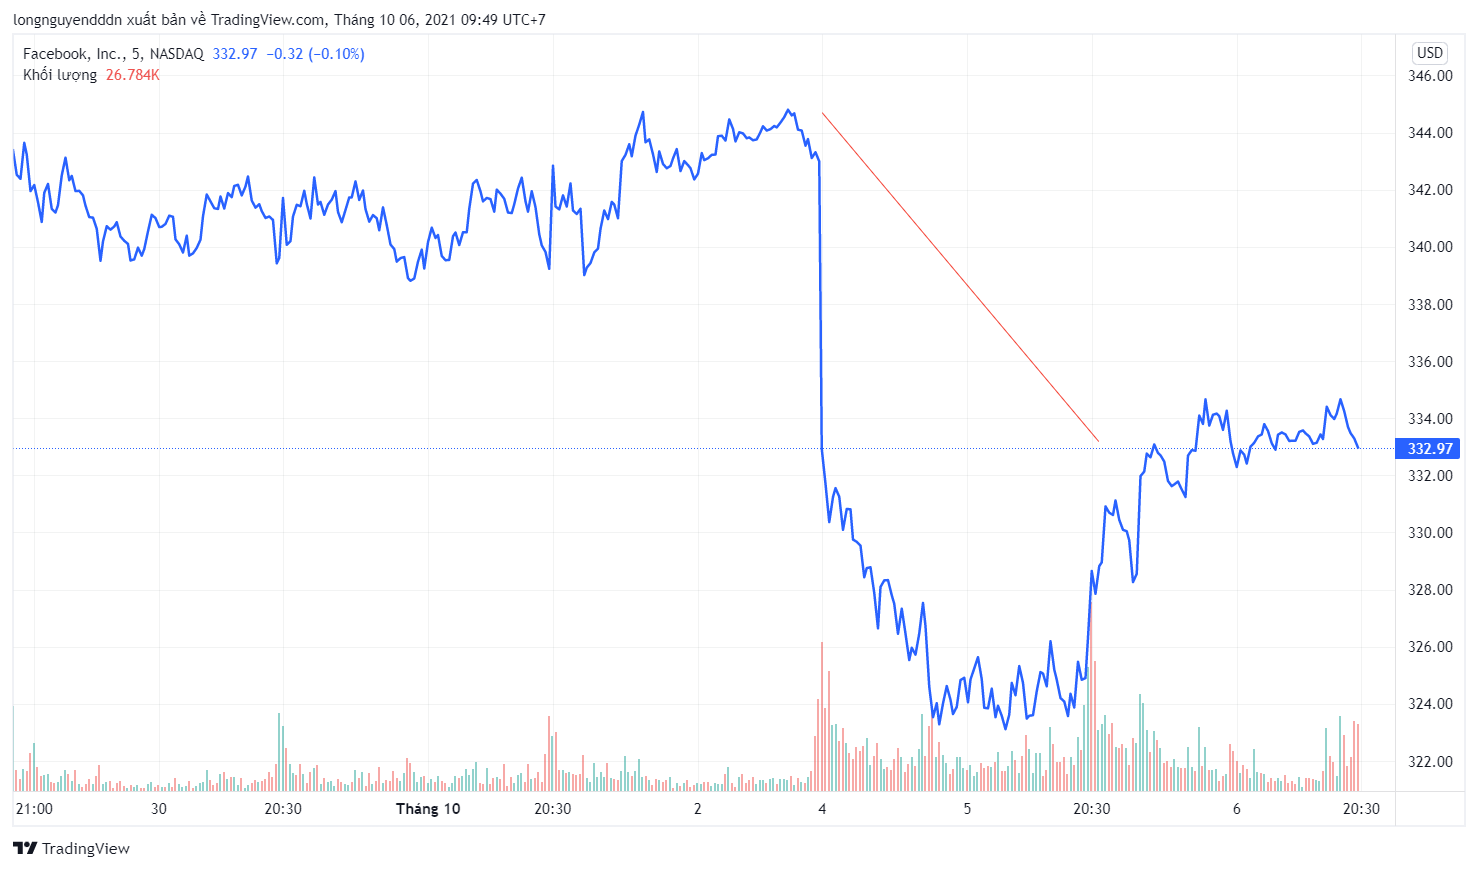 Cổ phiếu Facebook hồi phục dần sau đợt lao dốc - Ảnh 1